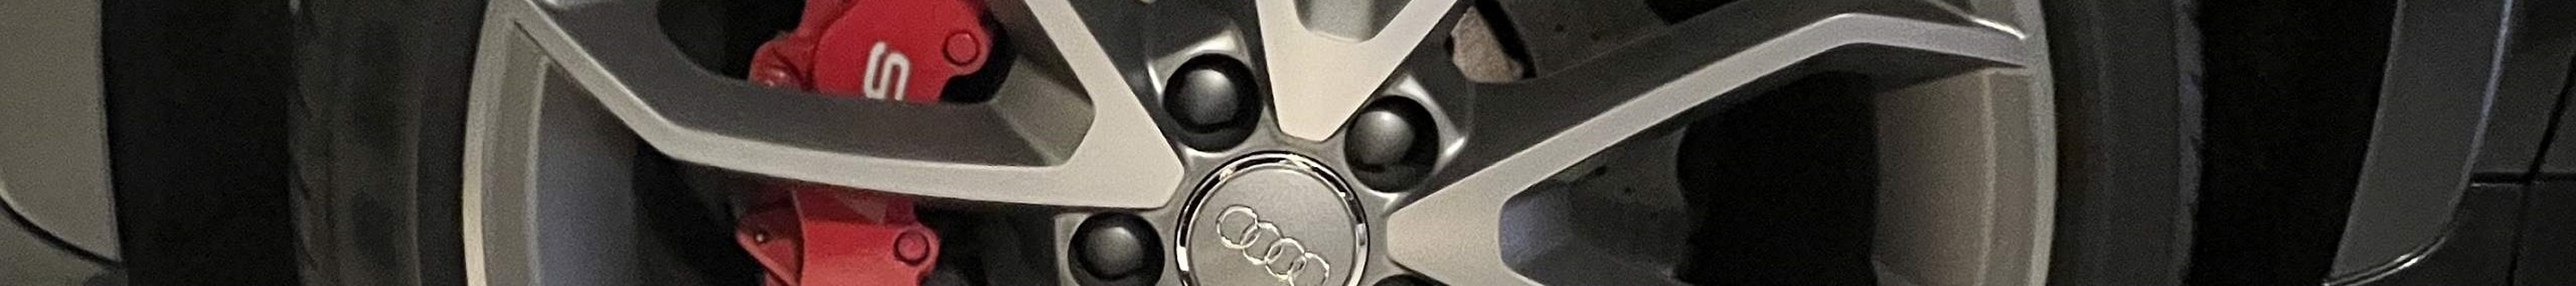 Audi RS Q3 2015